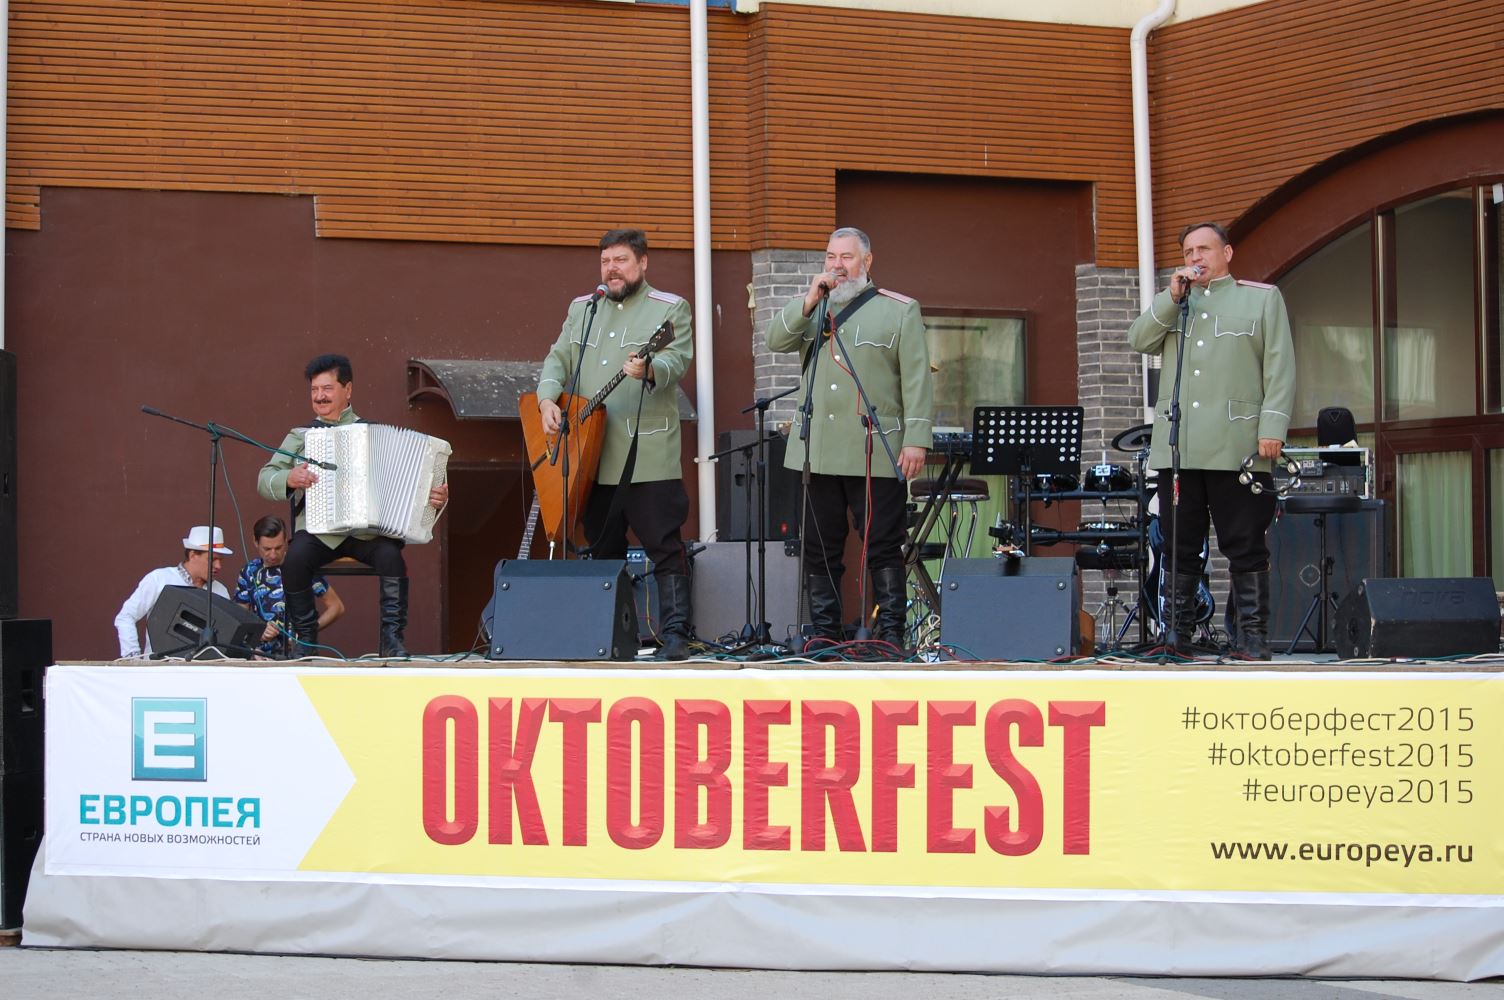 ЕВРОПЕЯ продолжает праздновать «Октоберфест»